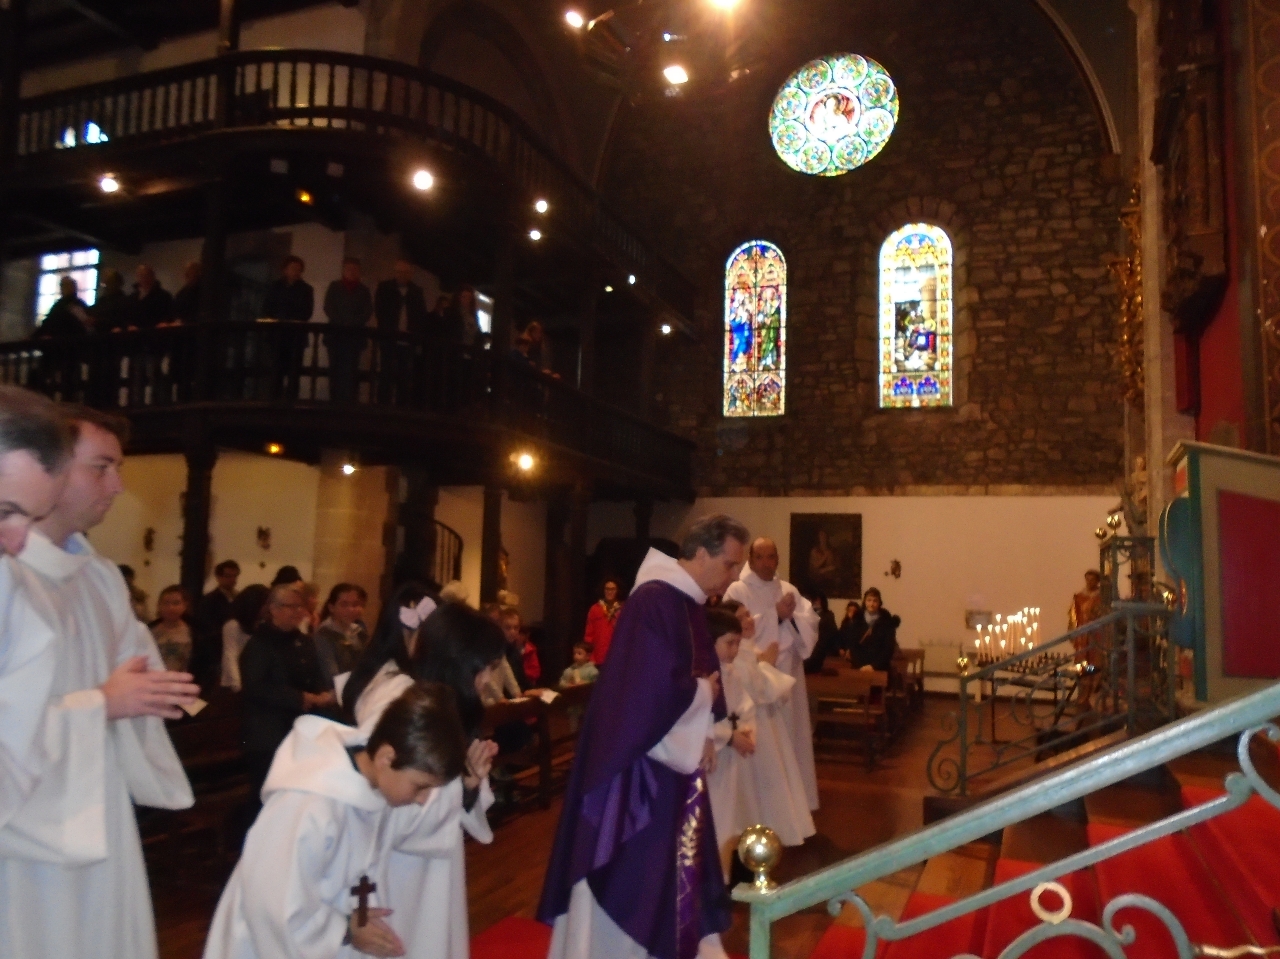 Beaucoup de serviteurs autour de l'autel font une belle liturgie !